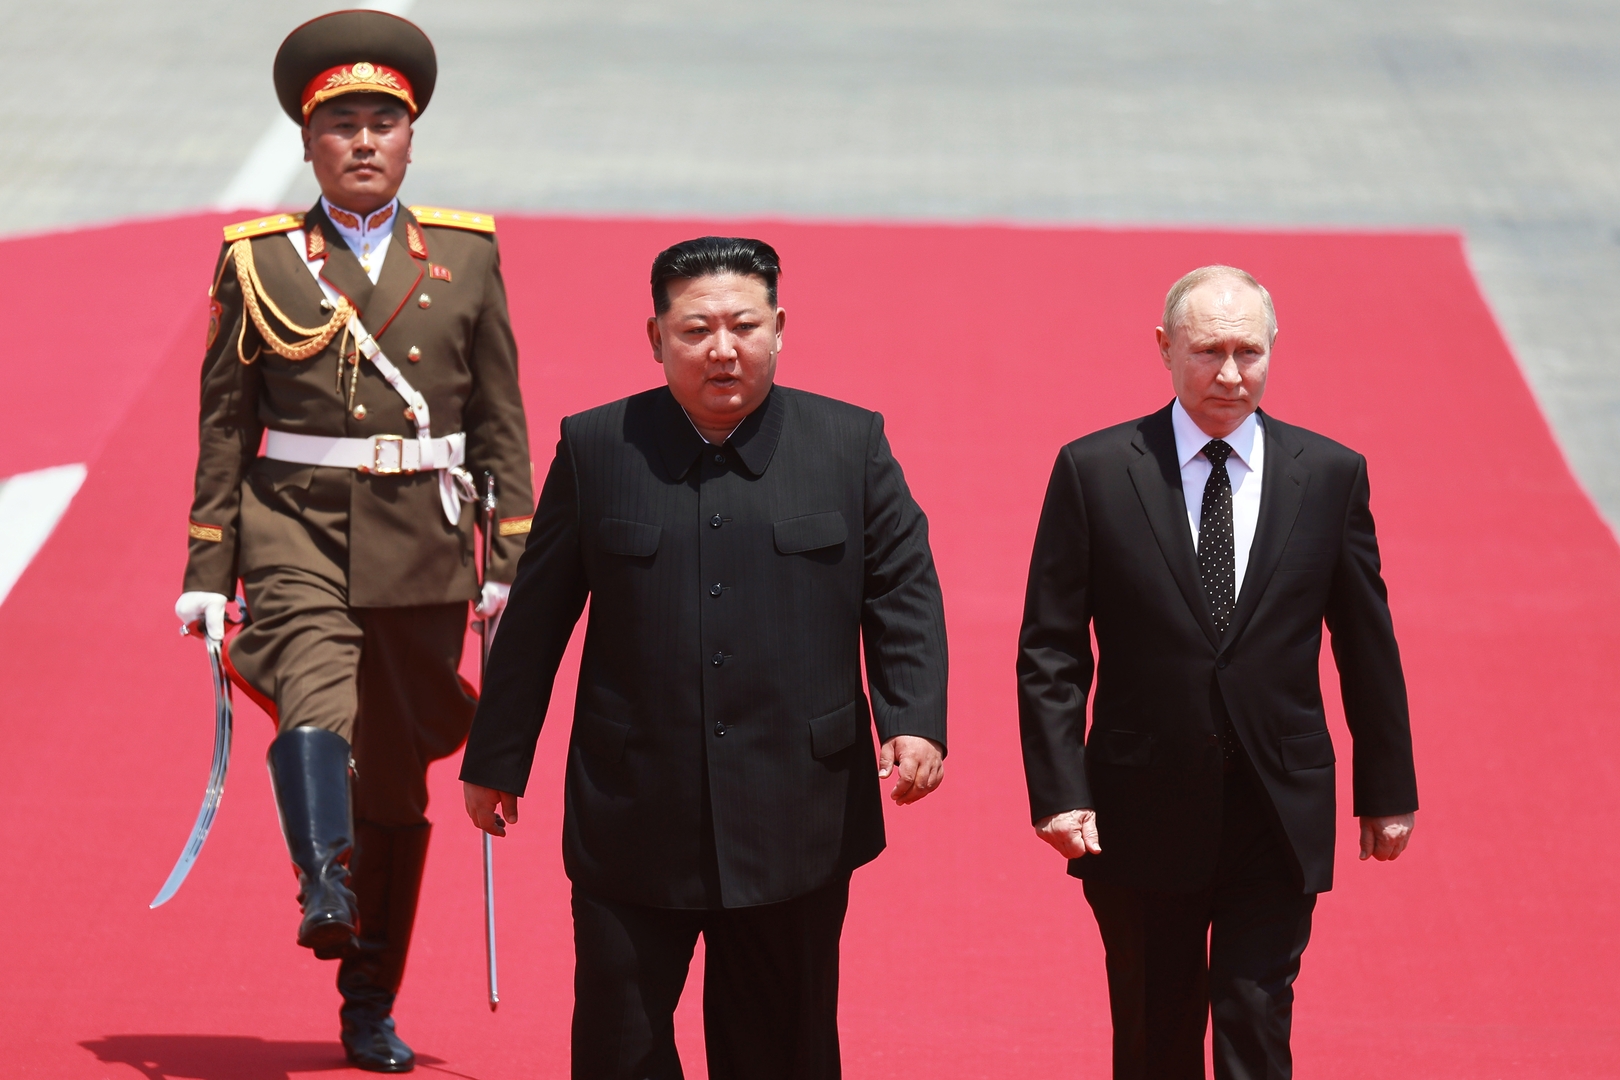 بوتين: اتفاقية التعاون الاستراتيجي مع كوريا الشمالية تنص على تقديم العون حال تعرض أحد طرفيها لعدوان